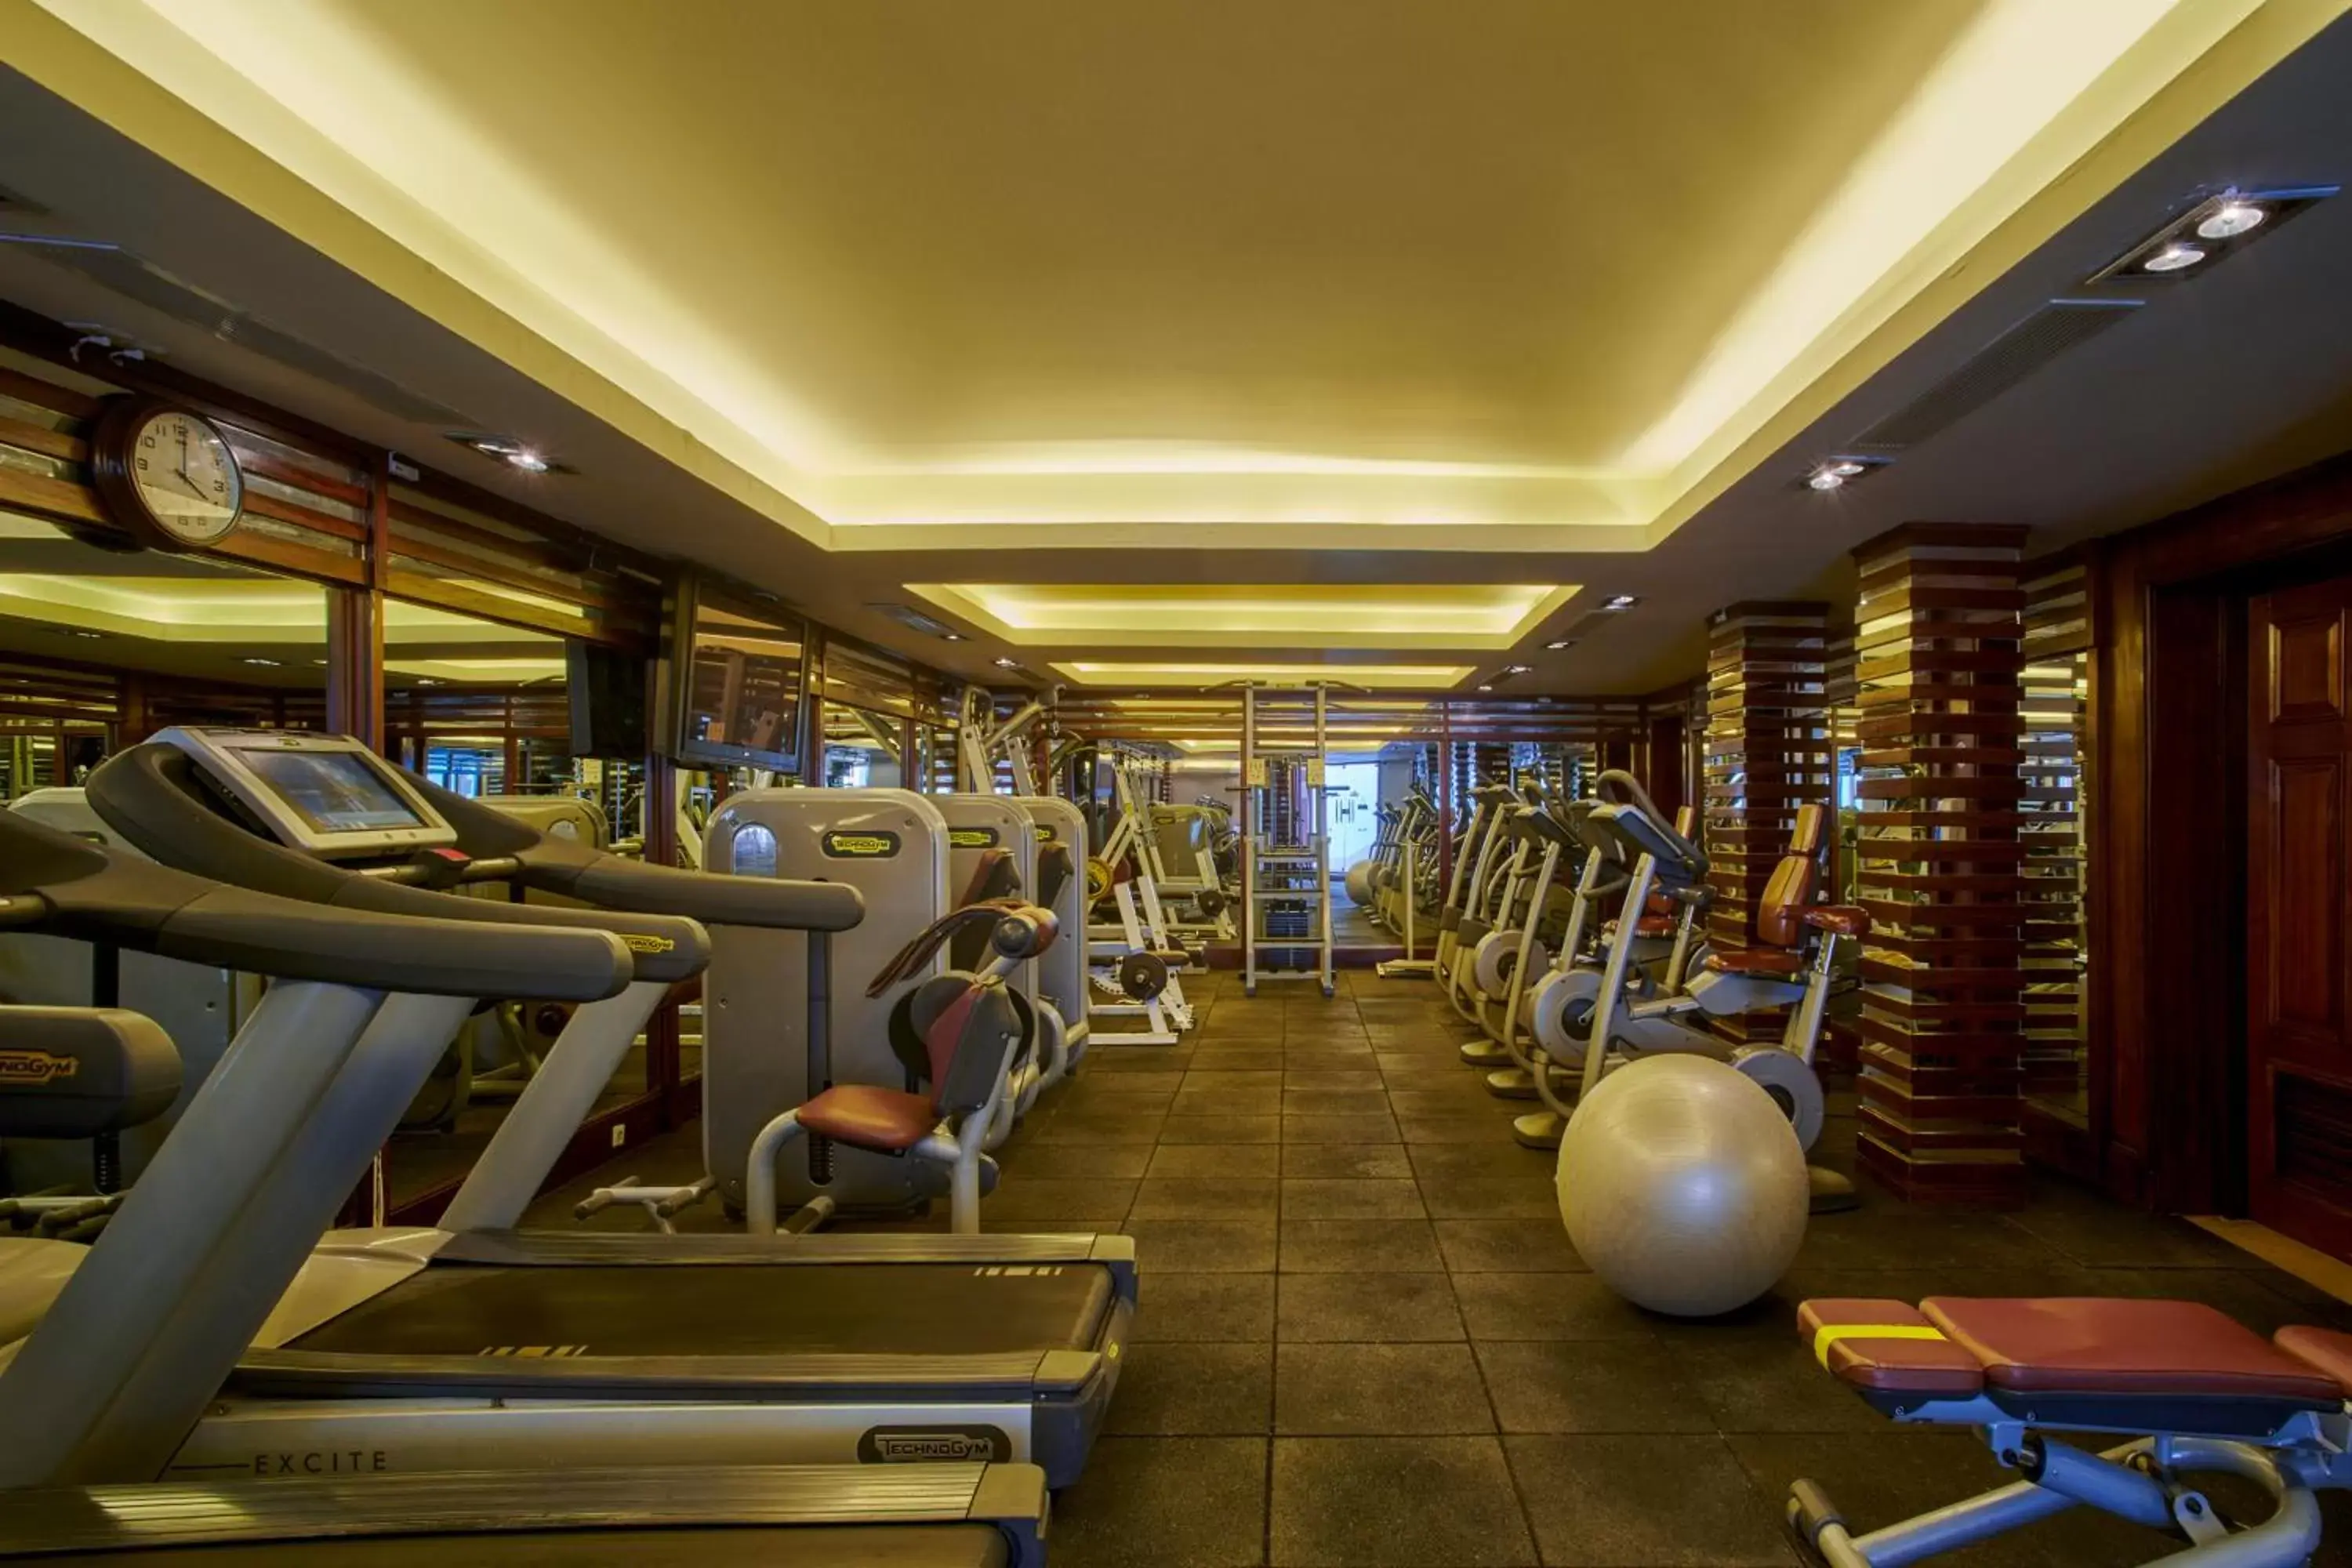 Fitness centre/facilities, Fitness Center/Facilities in Maritim Jolie Ville Resort & Casino